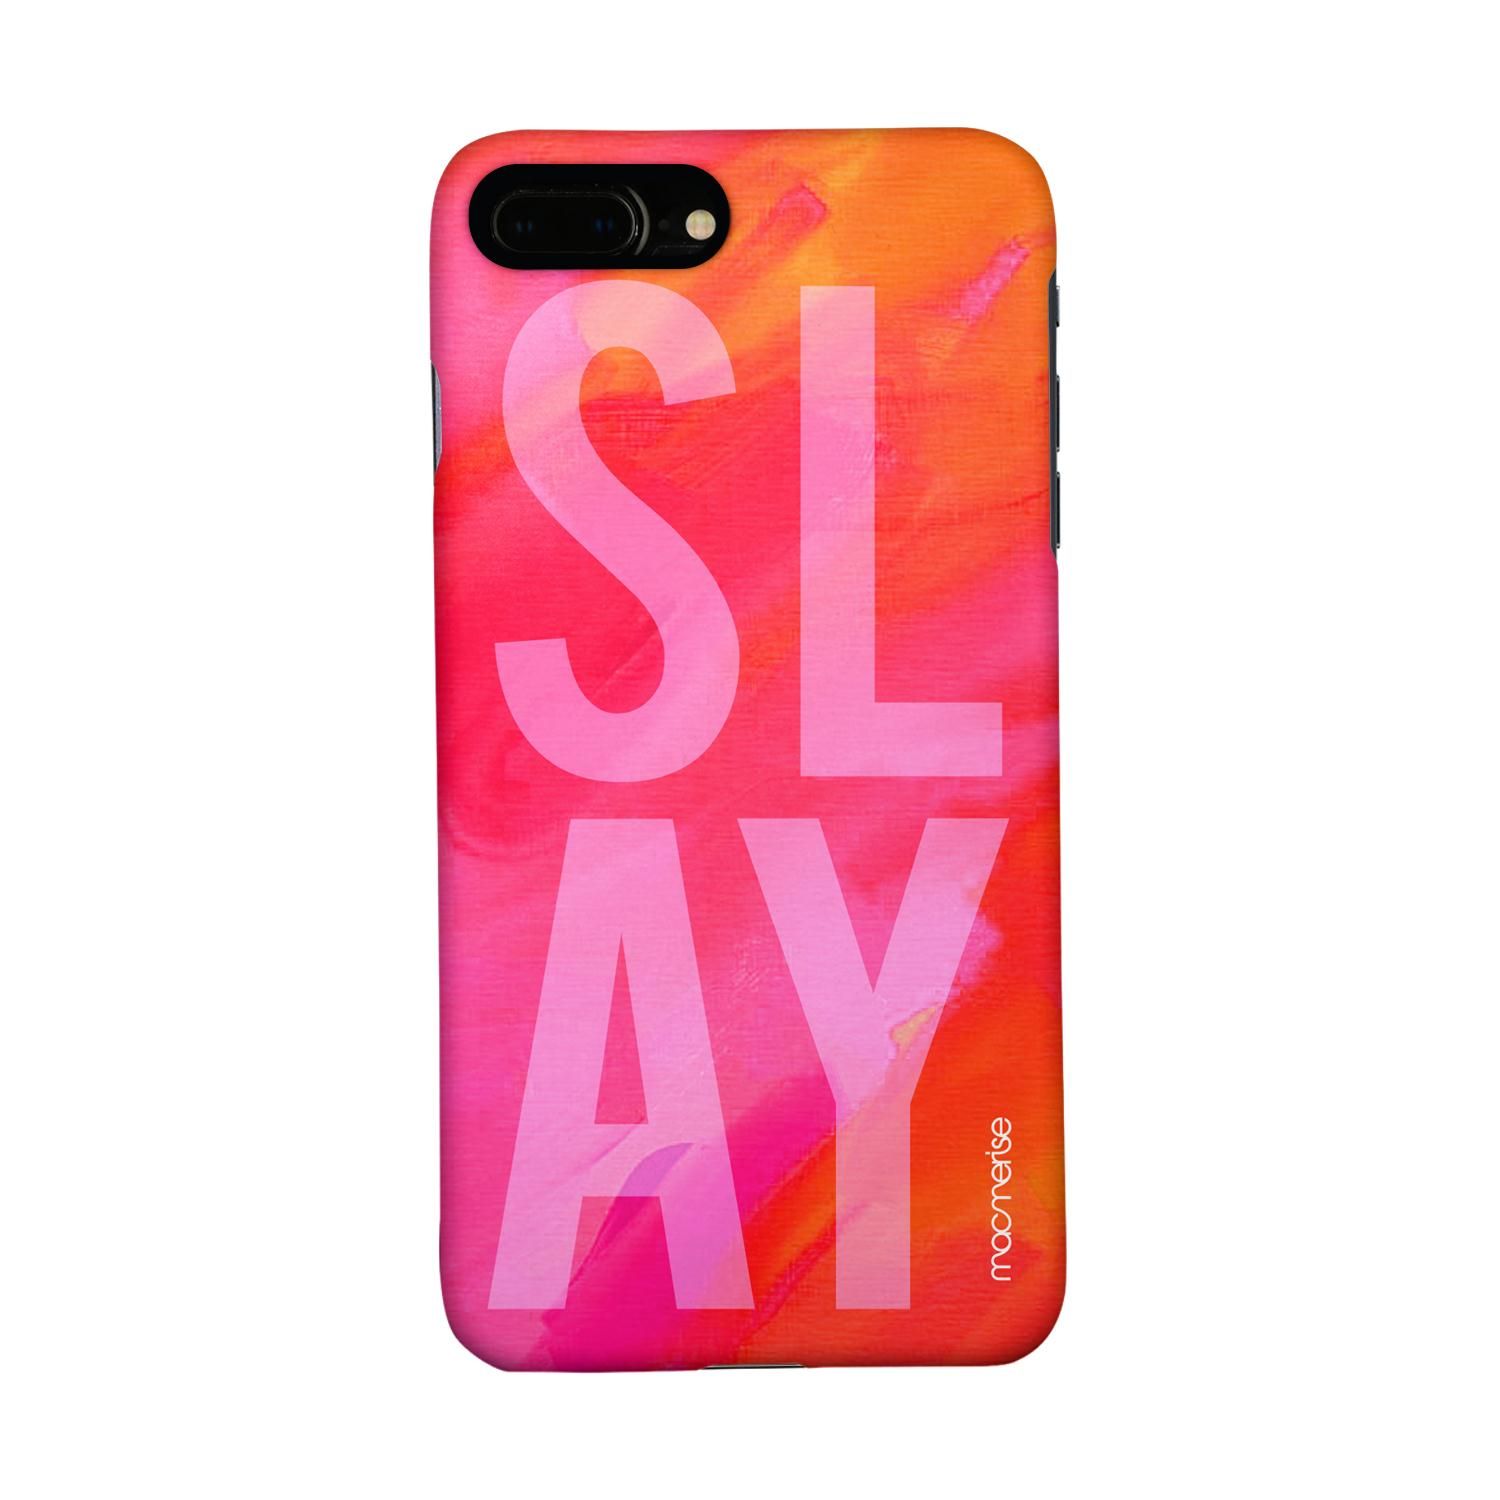 Buy Slay Pink - Sleek Phone Case for iPhone 7 Plus Online